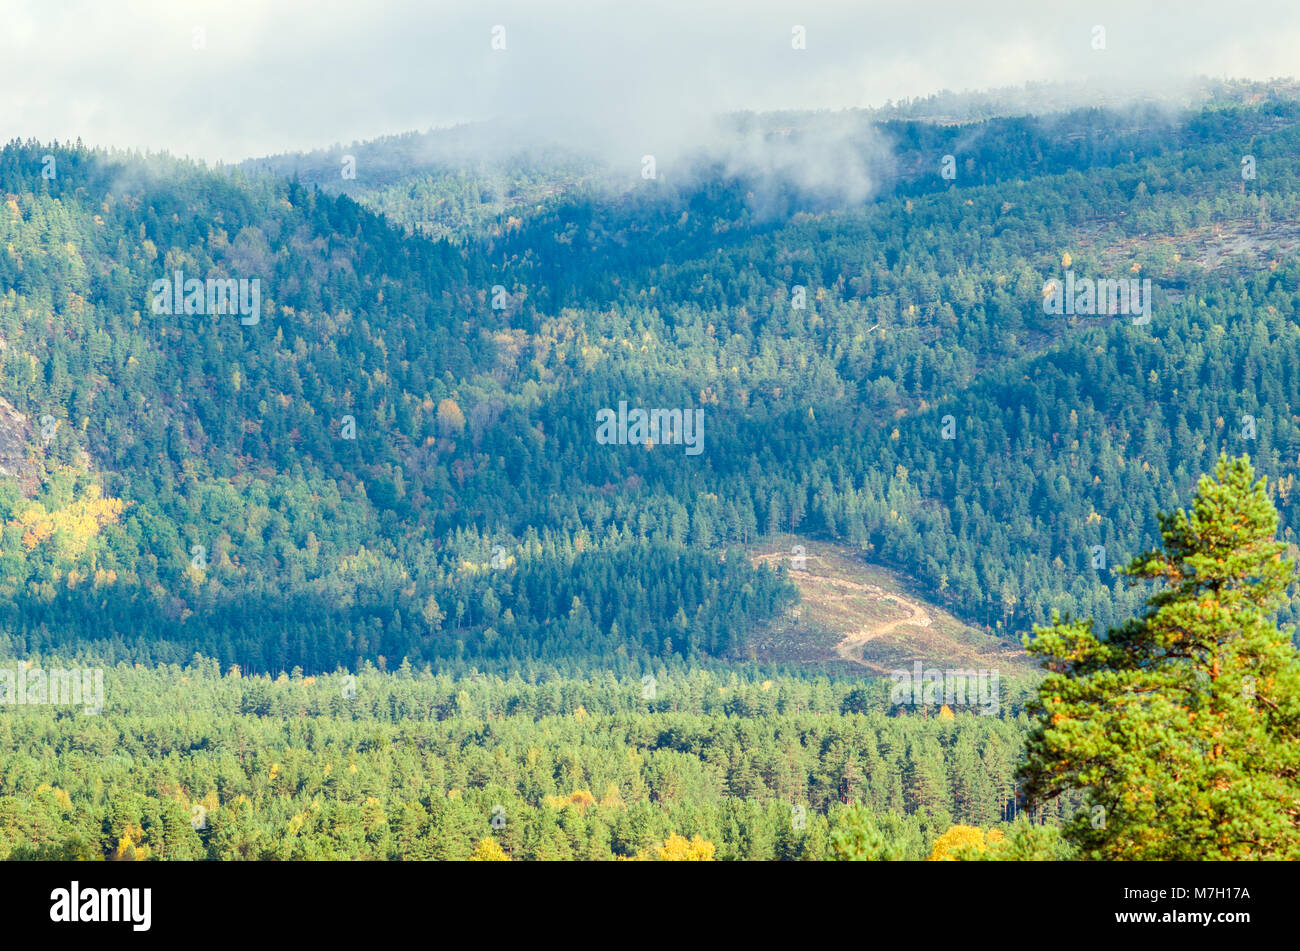 Paysage de la Norvège centrale midland avec faibles montagnes couvertes par la forêt. Evje, milieu de la Norvège. Banque D'Images